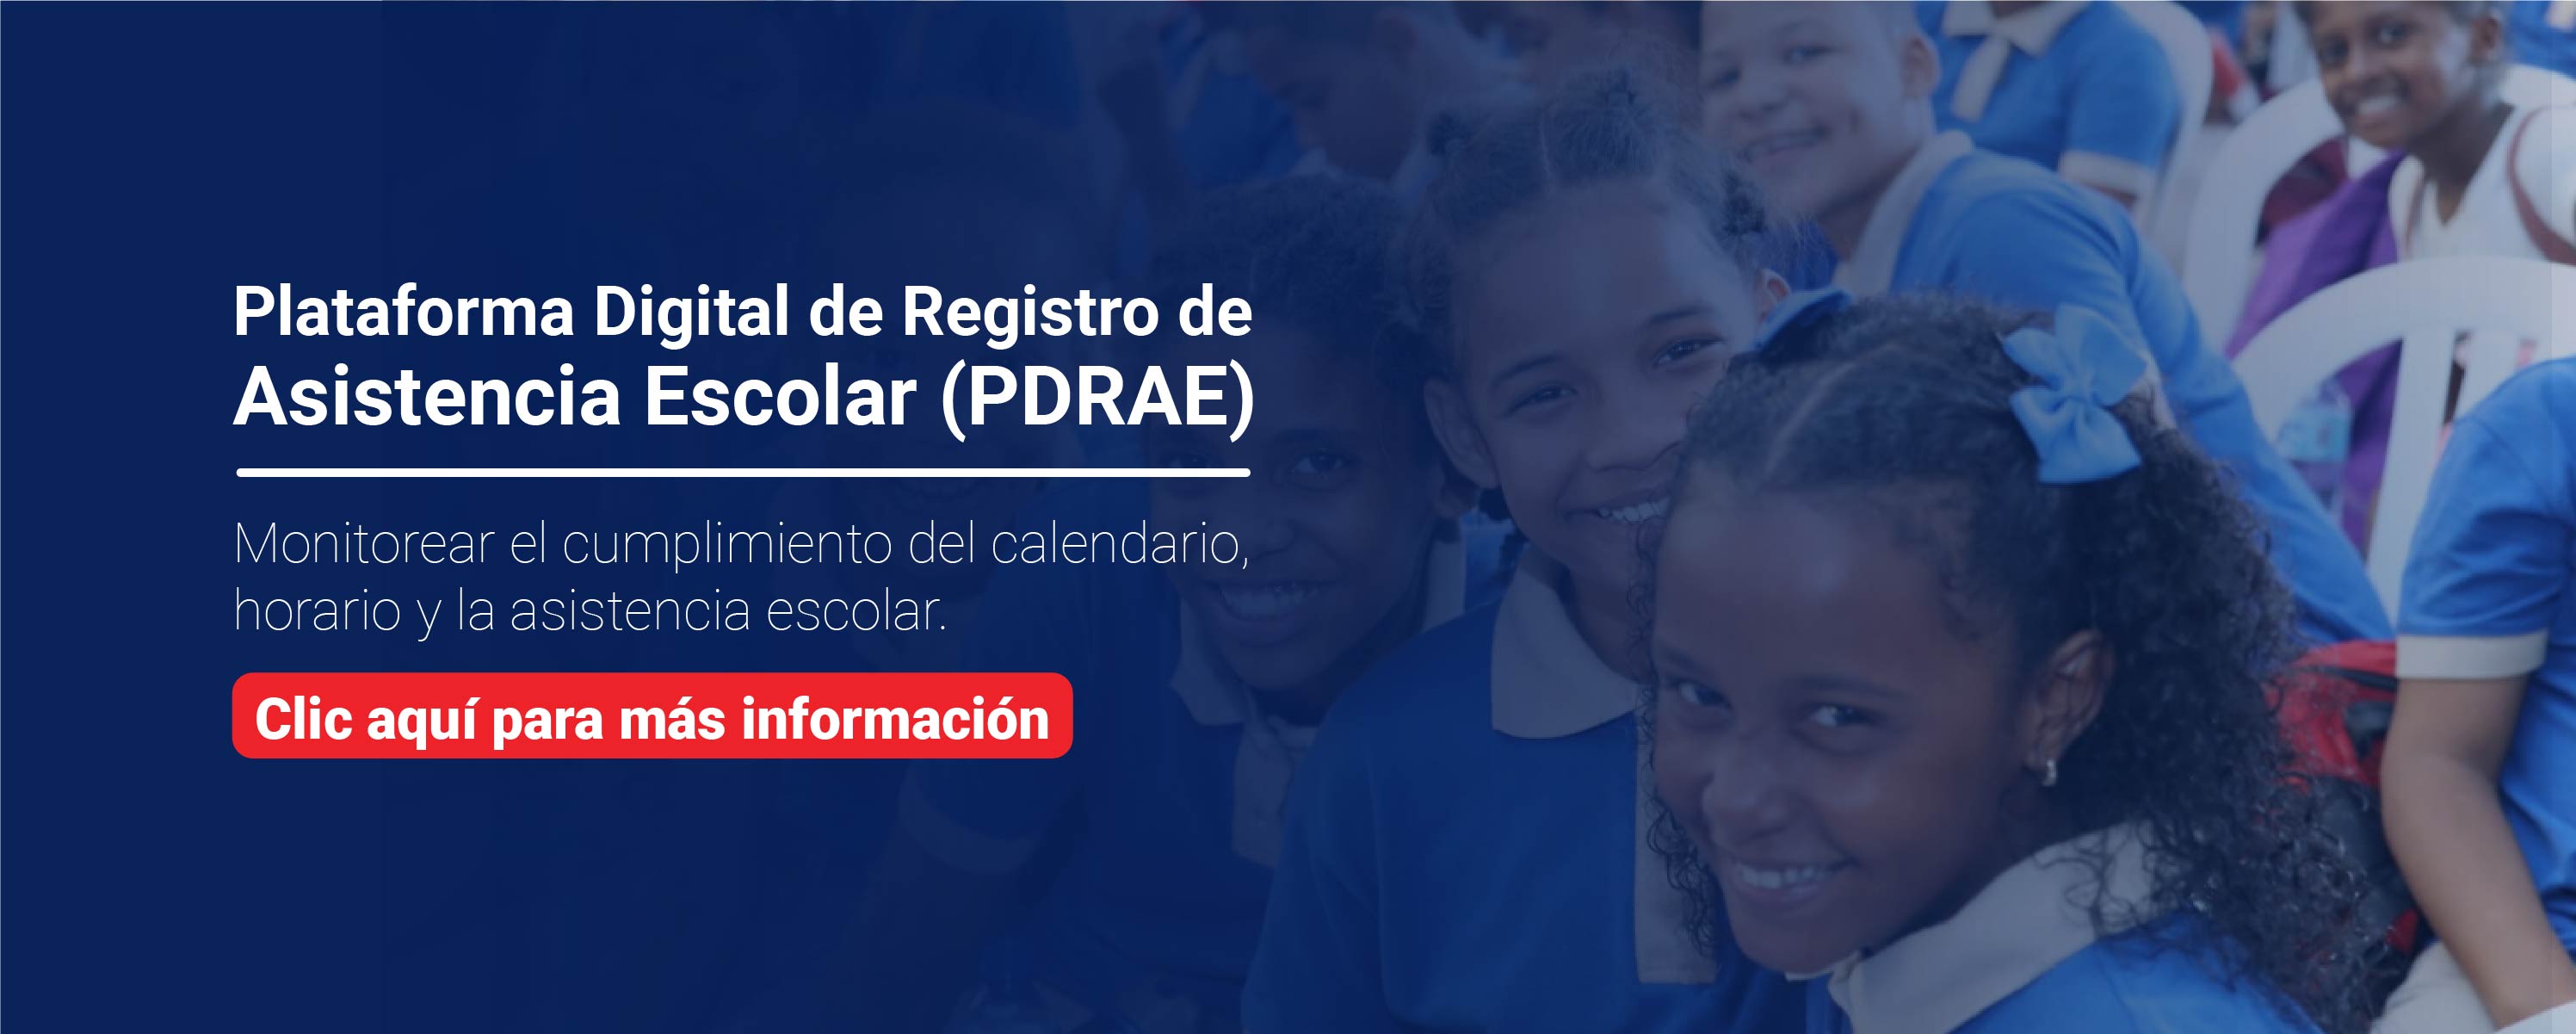 Plataforma Digital de Registro de Asistencia Escolar (PDRAE)